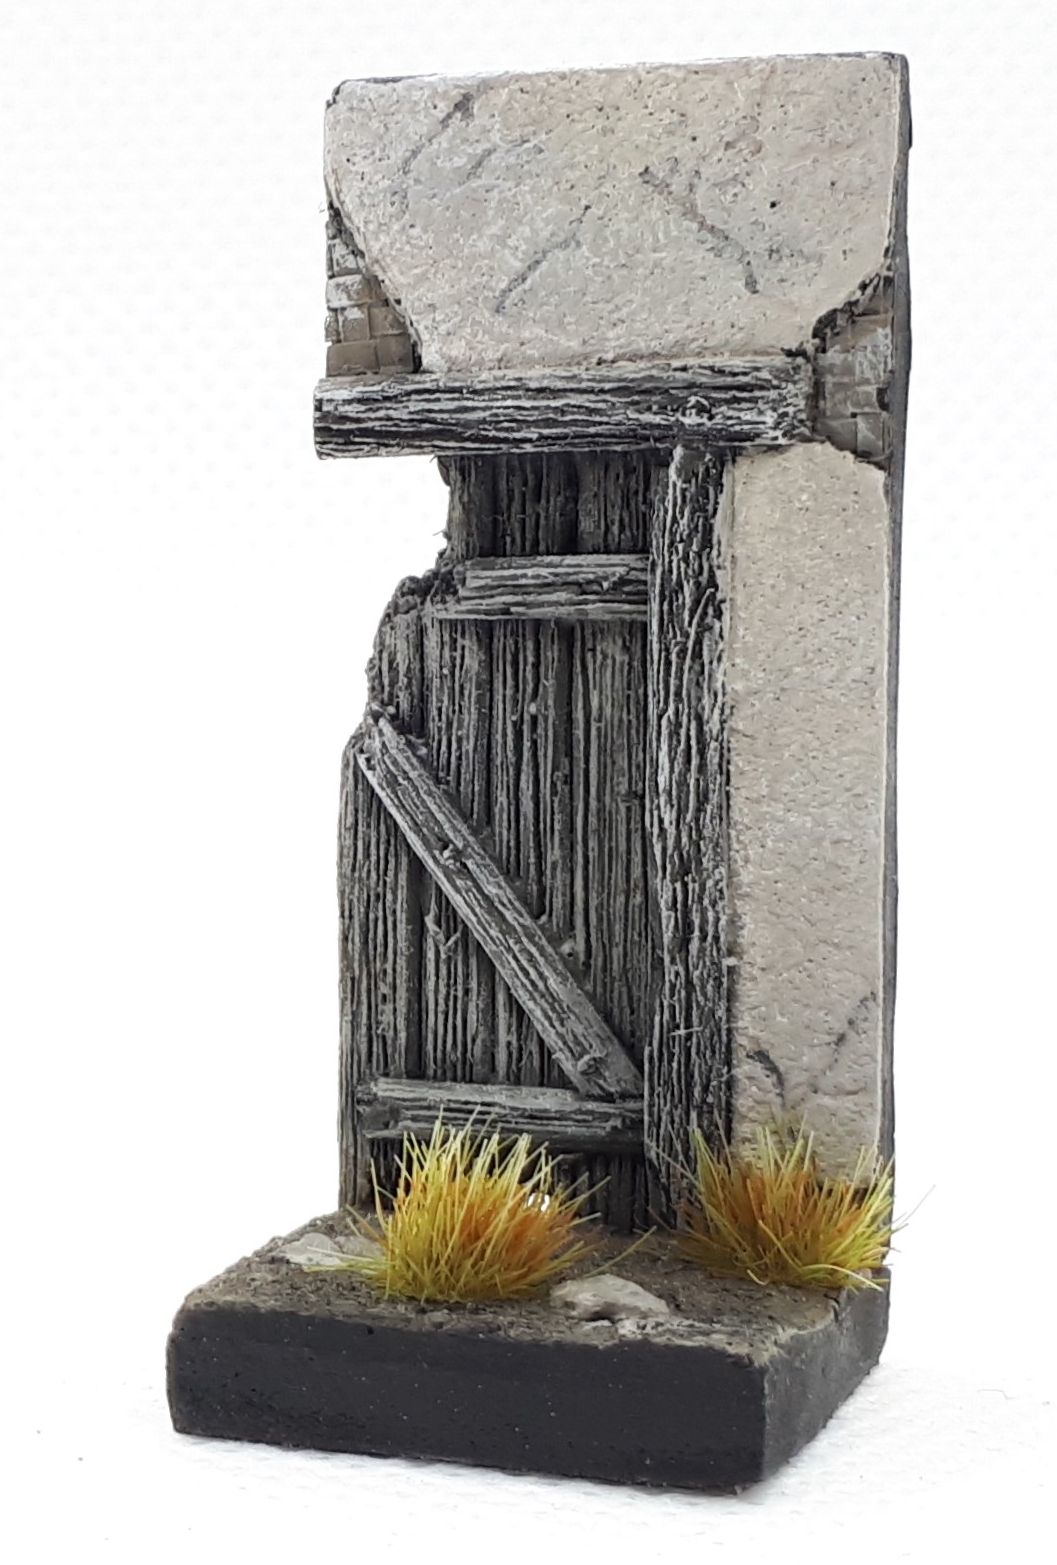 "Wooden door" vignette base (2x2cm)